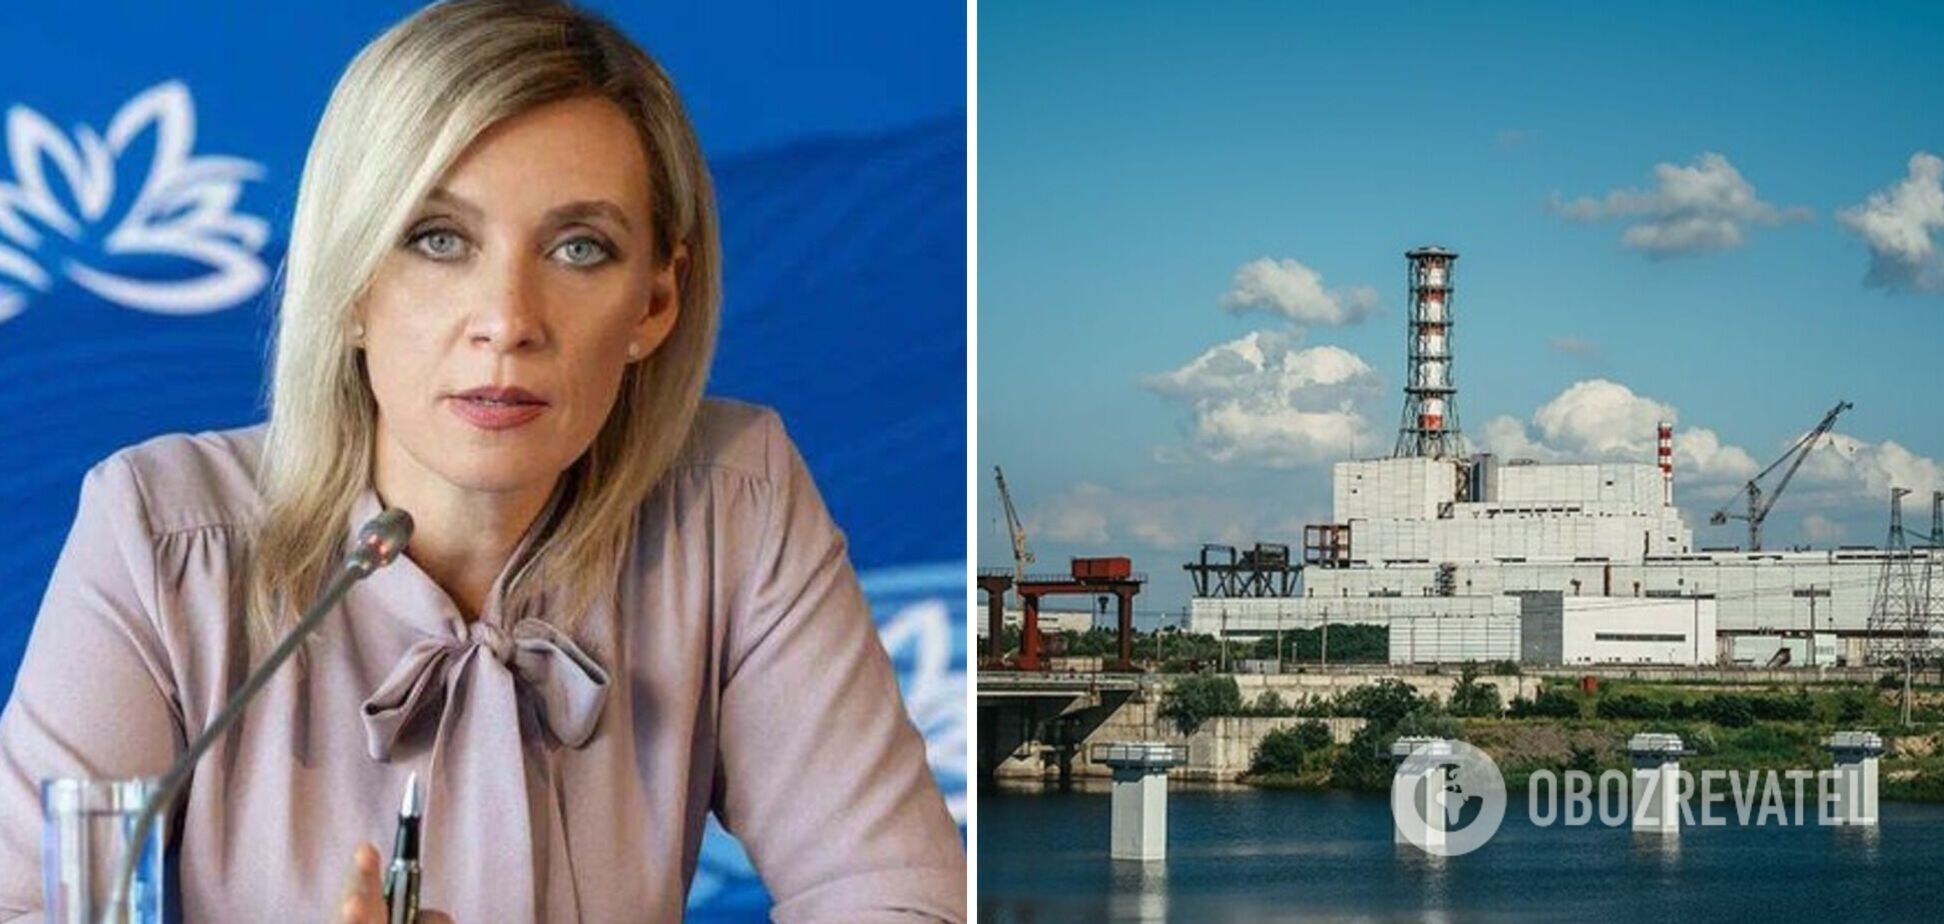 Захарова заявила, что 'украинский дрон' врезался в состав ядерных отходов Курской АЭС, и пожаловалась на 'терроризм'